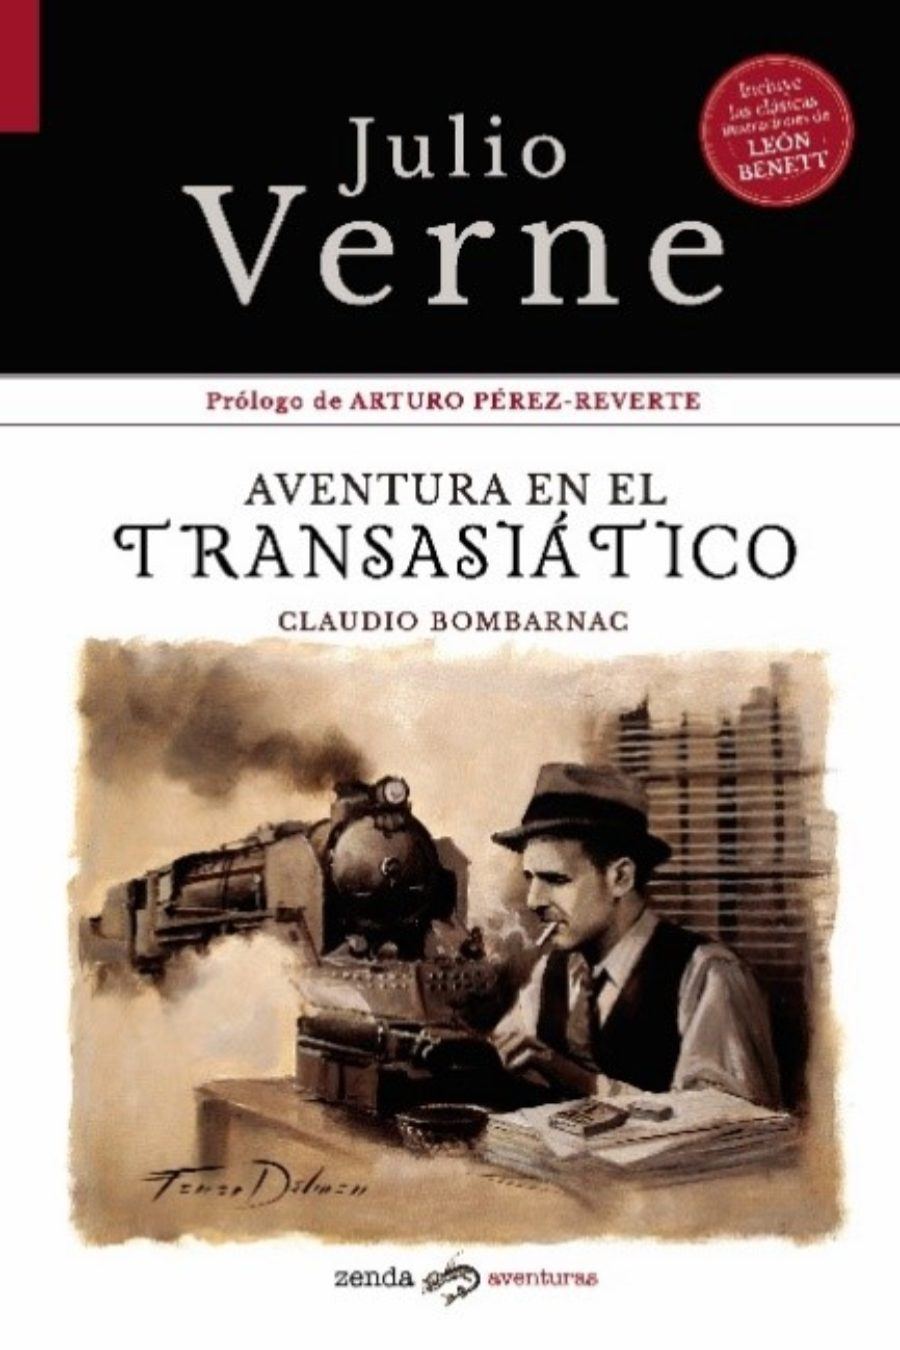 ‘Aventura en el Transasiático’. Julio Verne. Zenda Aventuras.